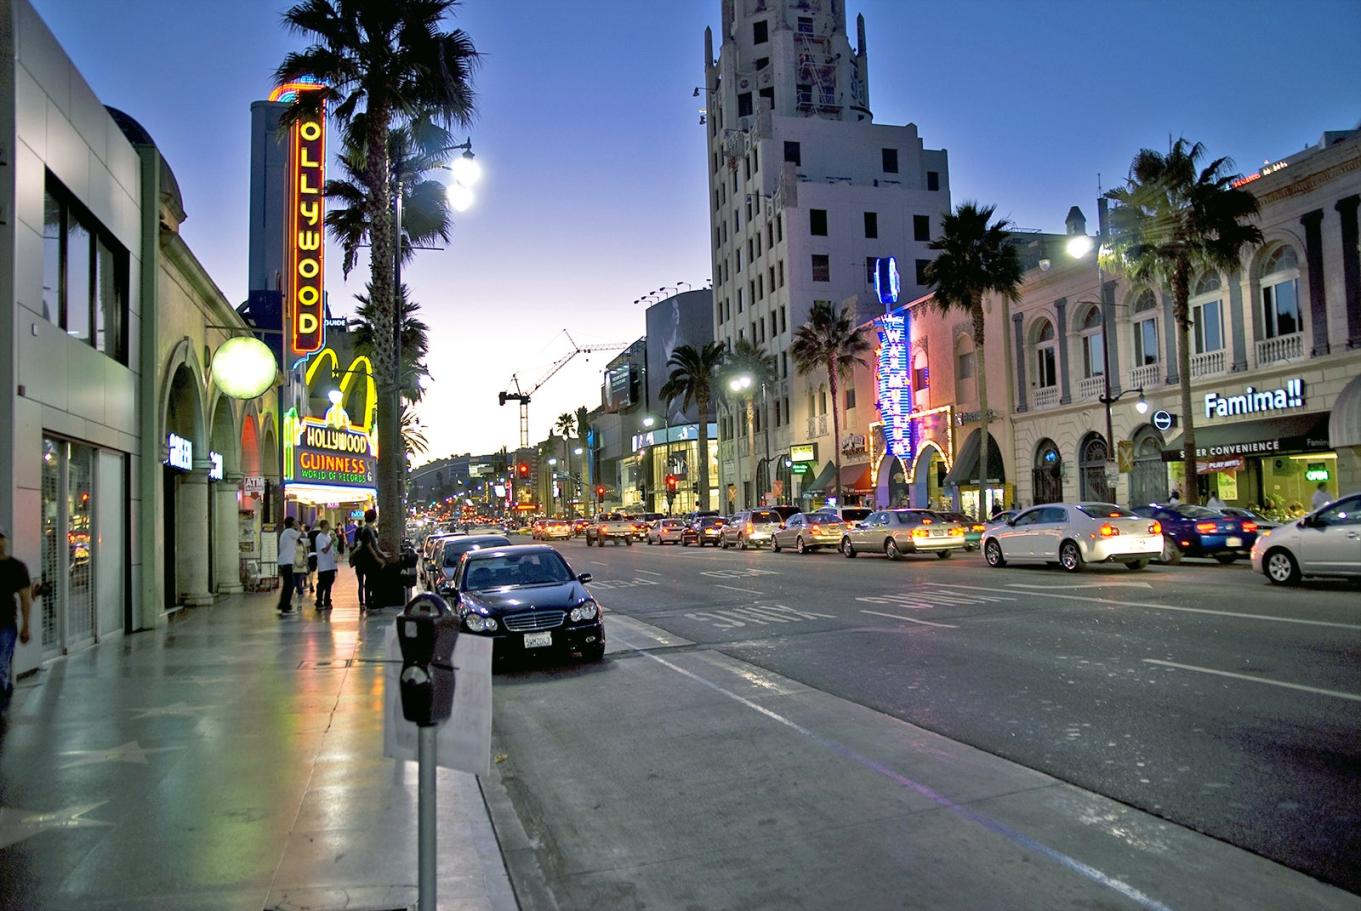 Jaki jest najdroższy dom celebrytów w Hollywood?